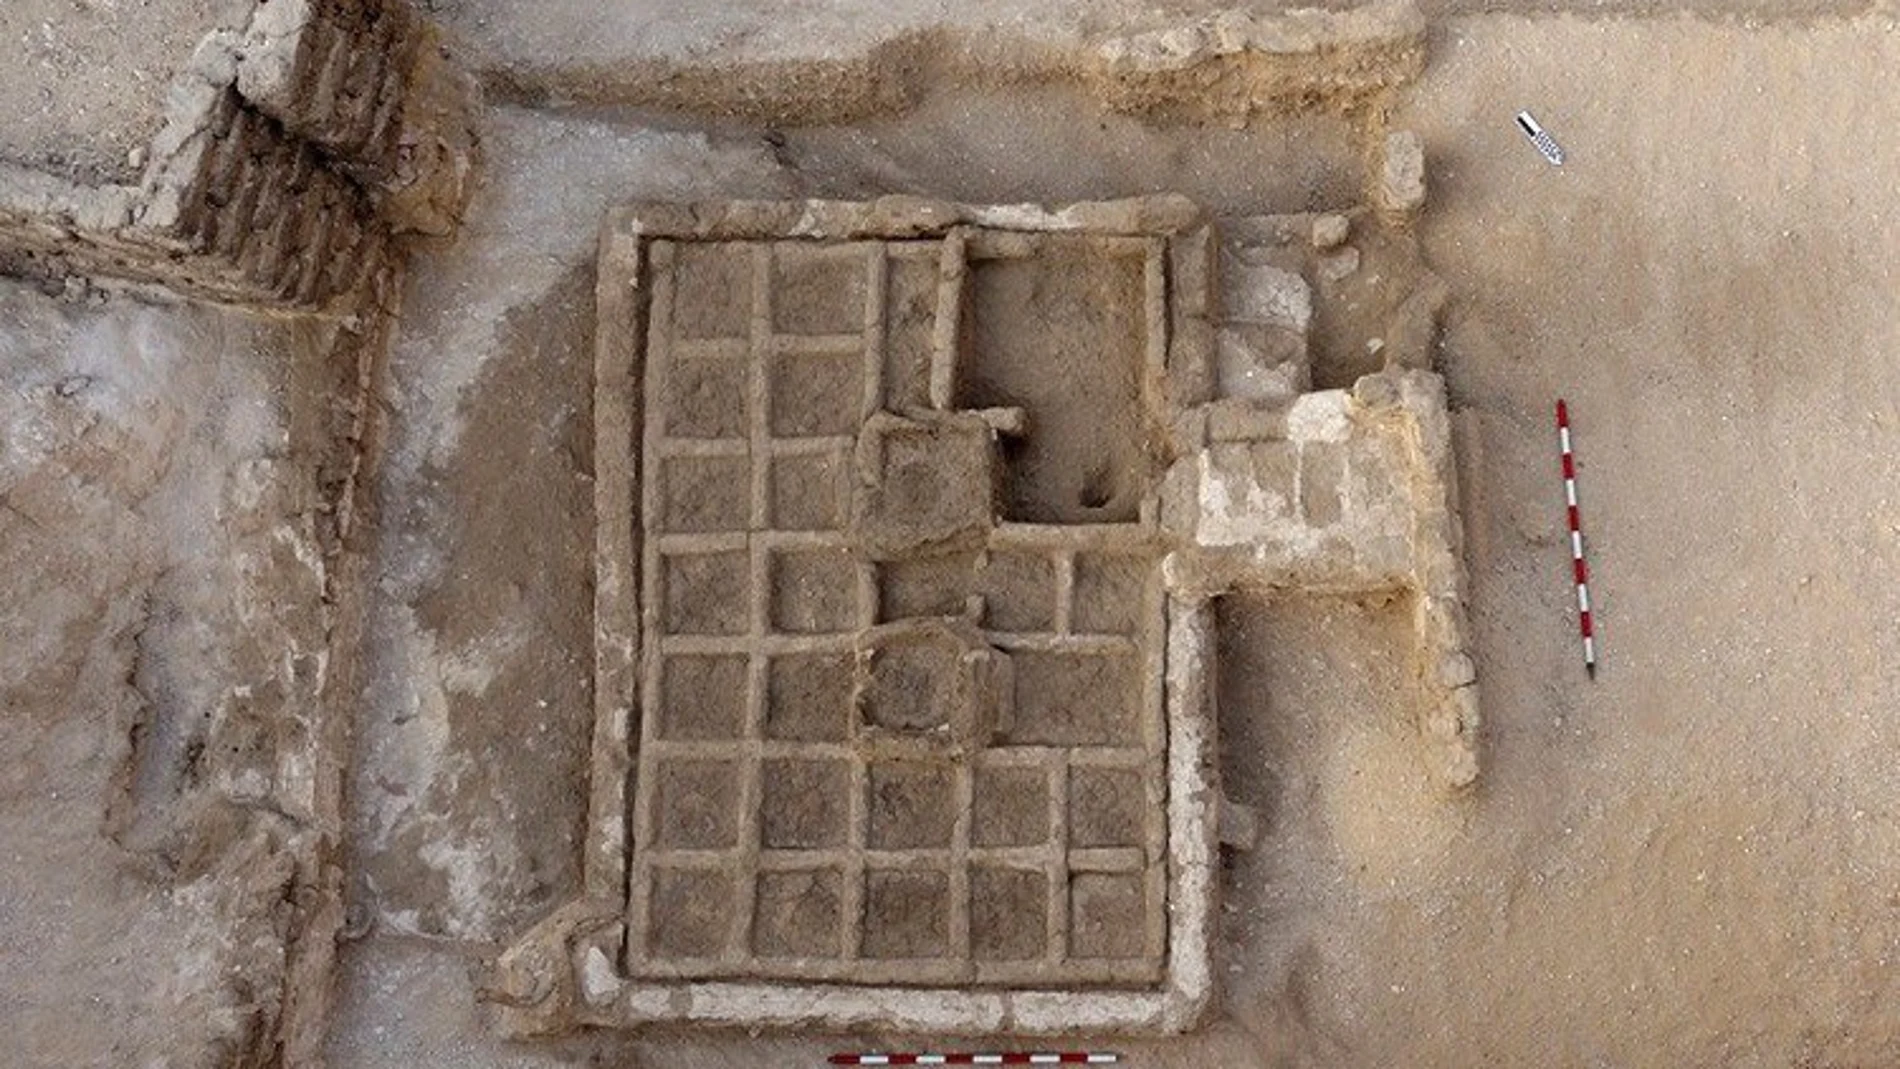 Cerca de la ciudad de Luxor, en la zona de Dra Abu al Naga, los arqueólogos desenterraron un jardín funerario localizado en un patio, que mide 3 metros y se divide en cuadrados de unos 30 centímetros